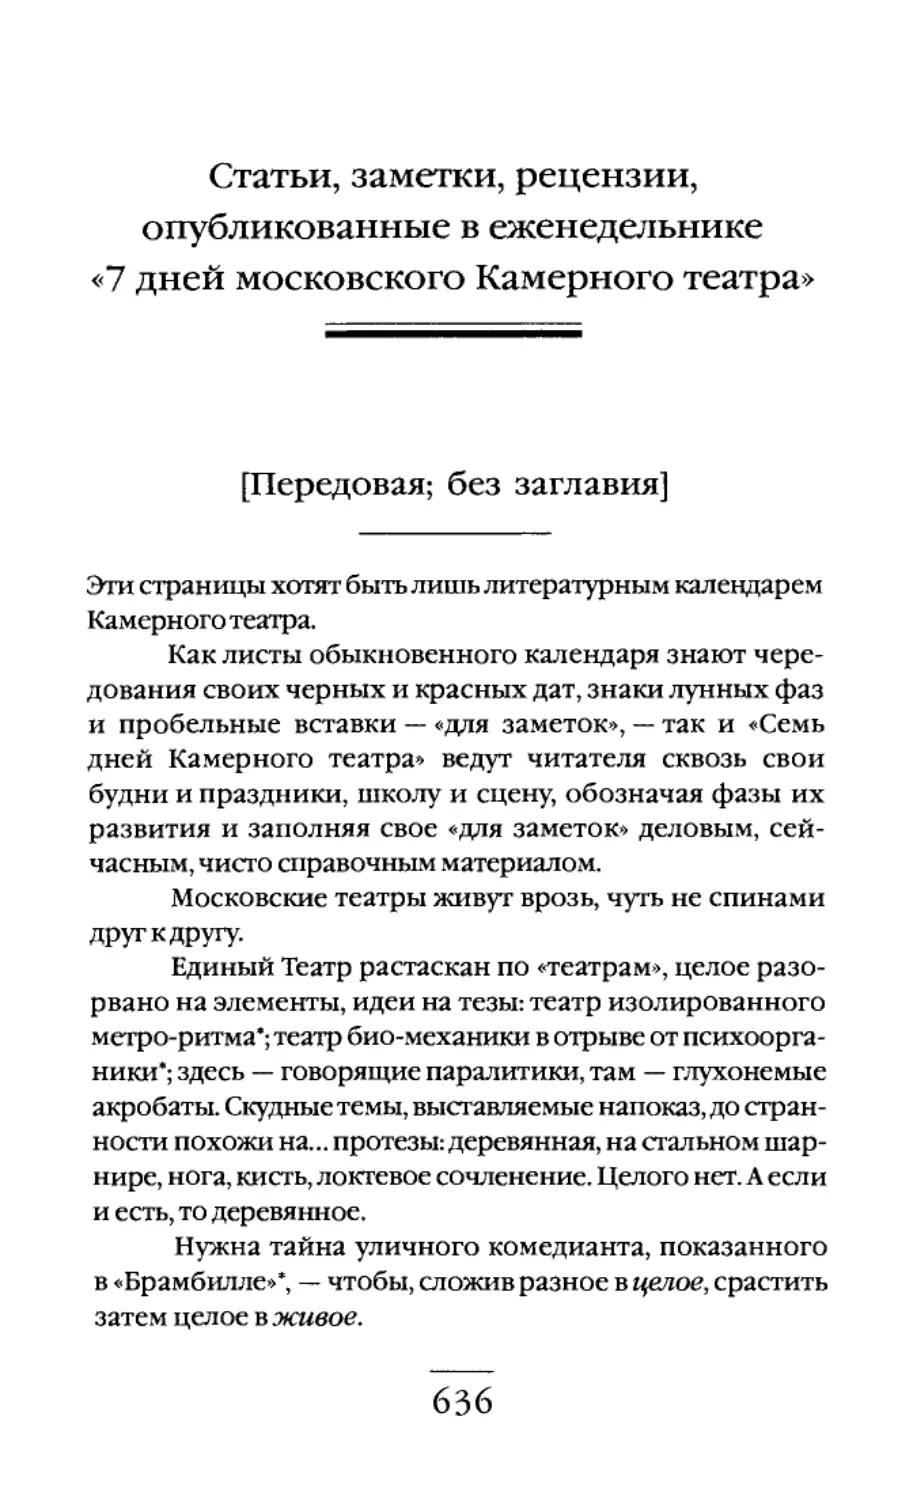 Статьи, заметки, рецензии, опубликованные в еженедельнике «7 дней московского Камерного театра»